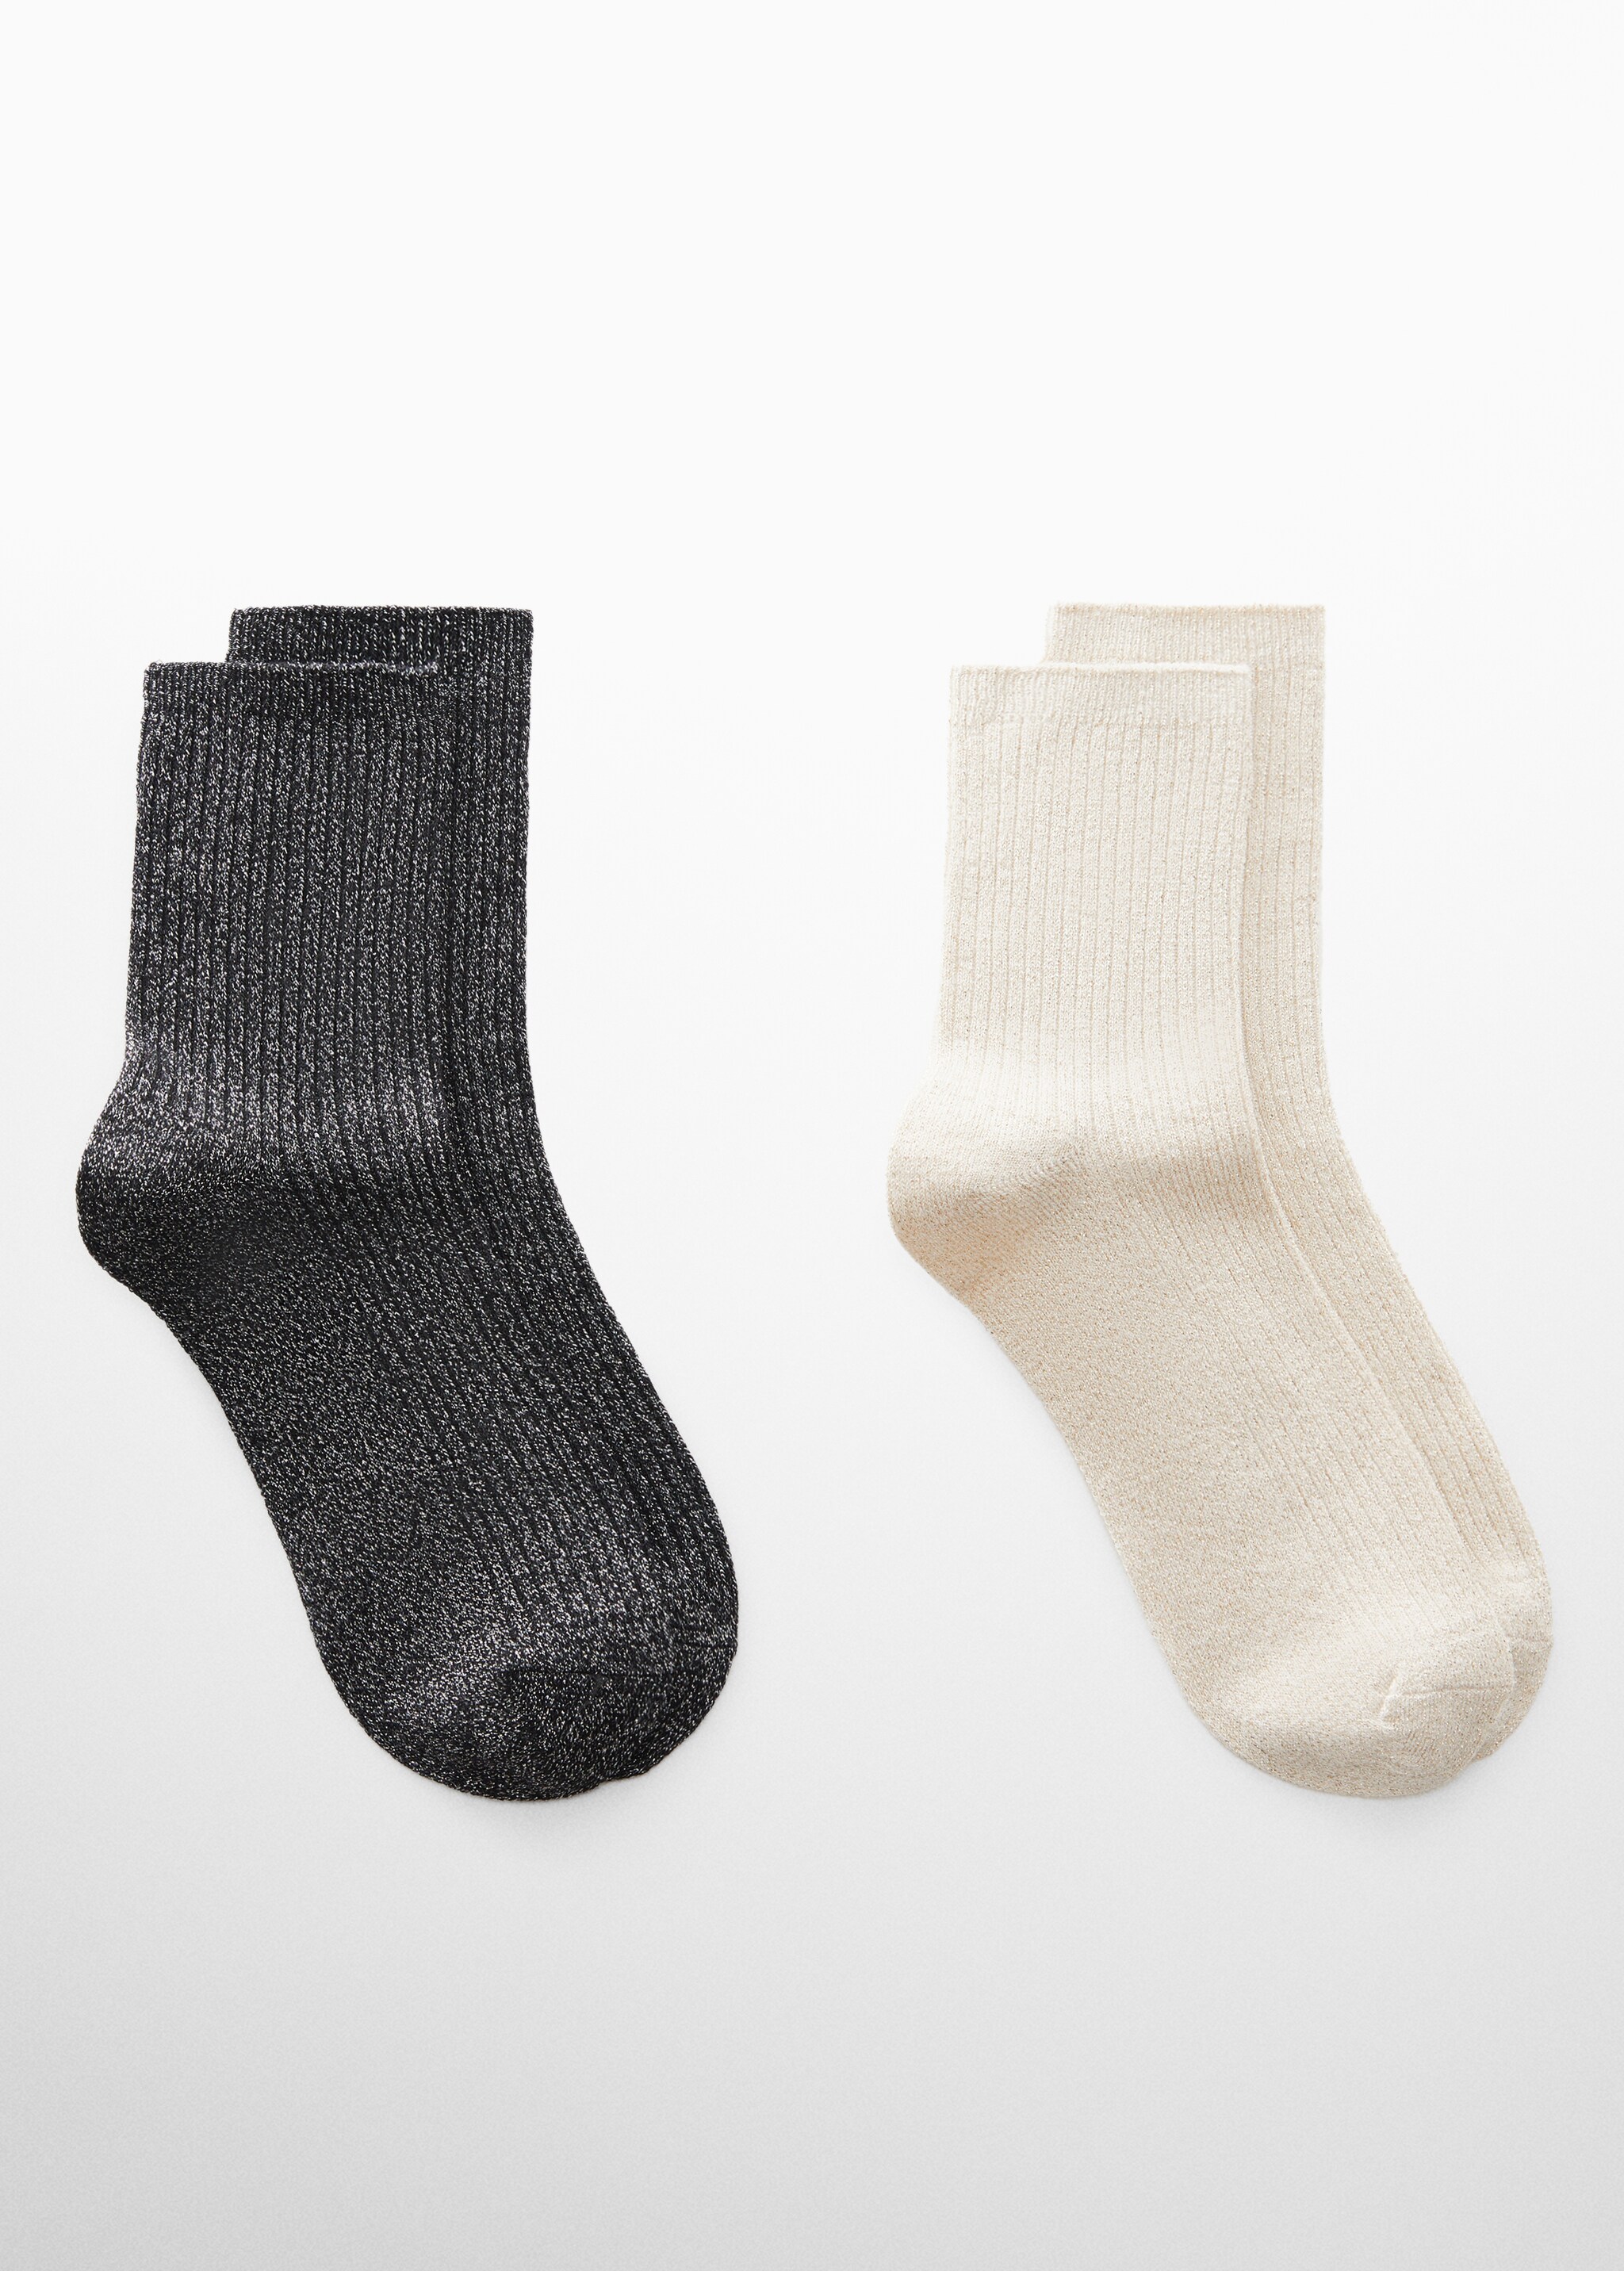 Σετ 2 ζευγάρια κάλτσες lurex - Προϊόν χωρίς μοντέλο